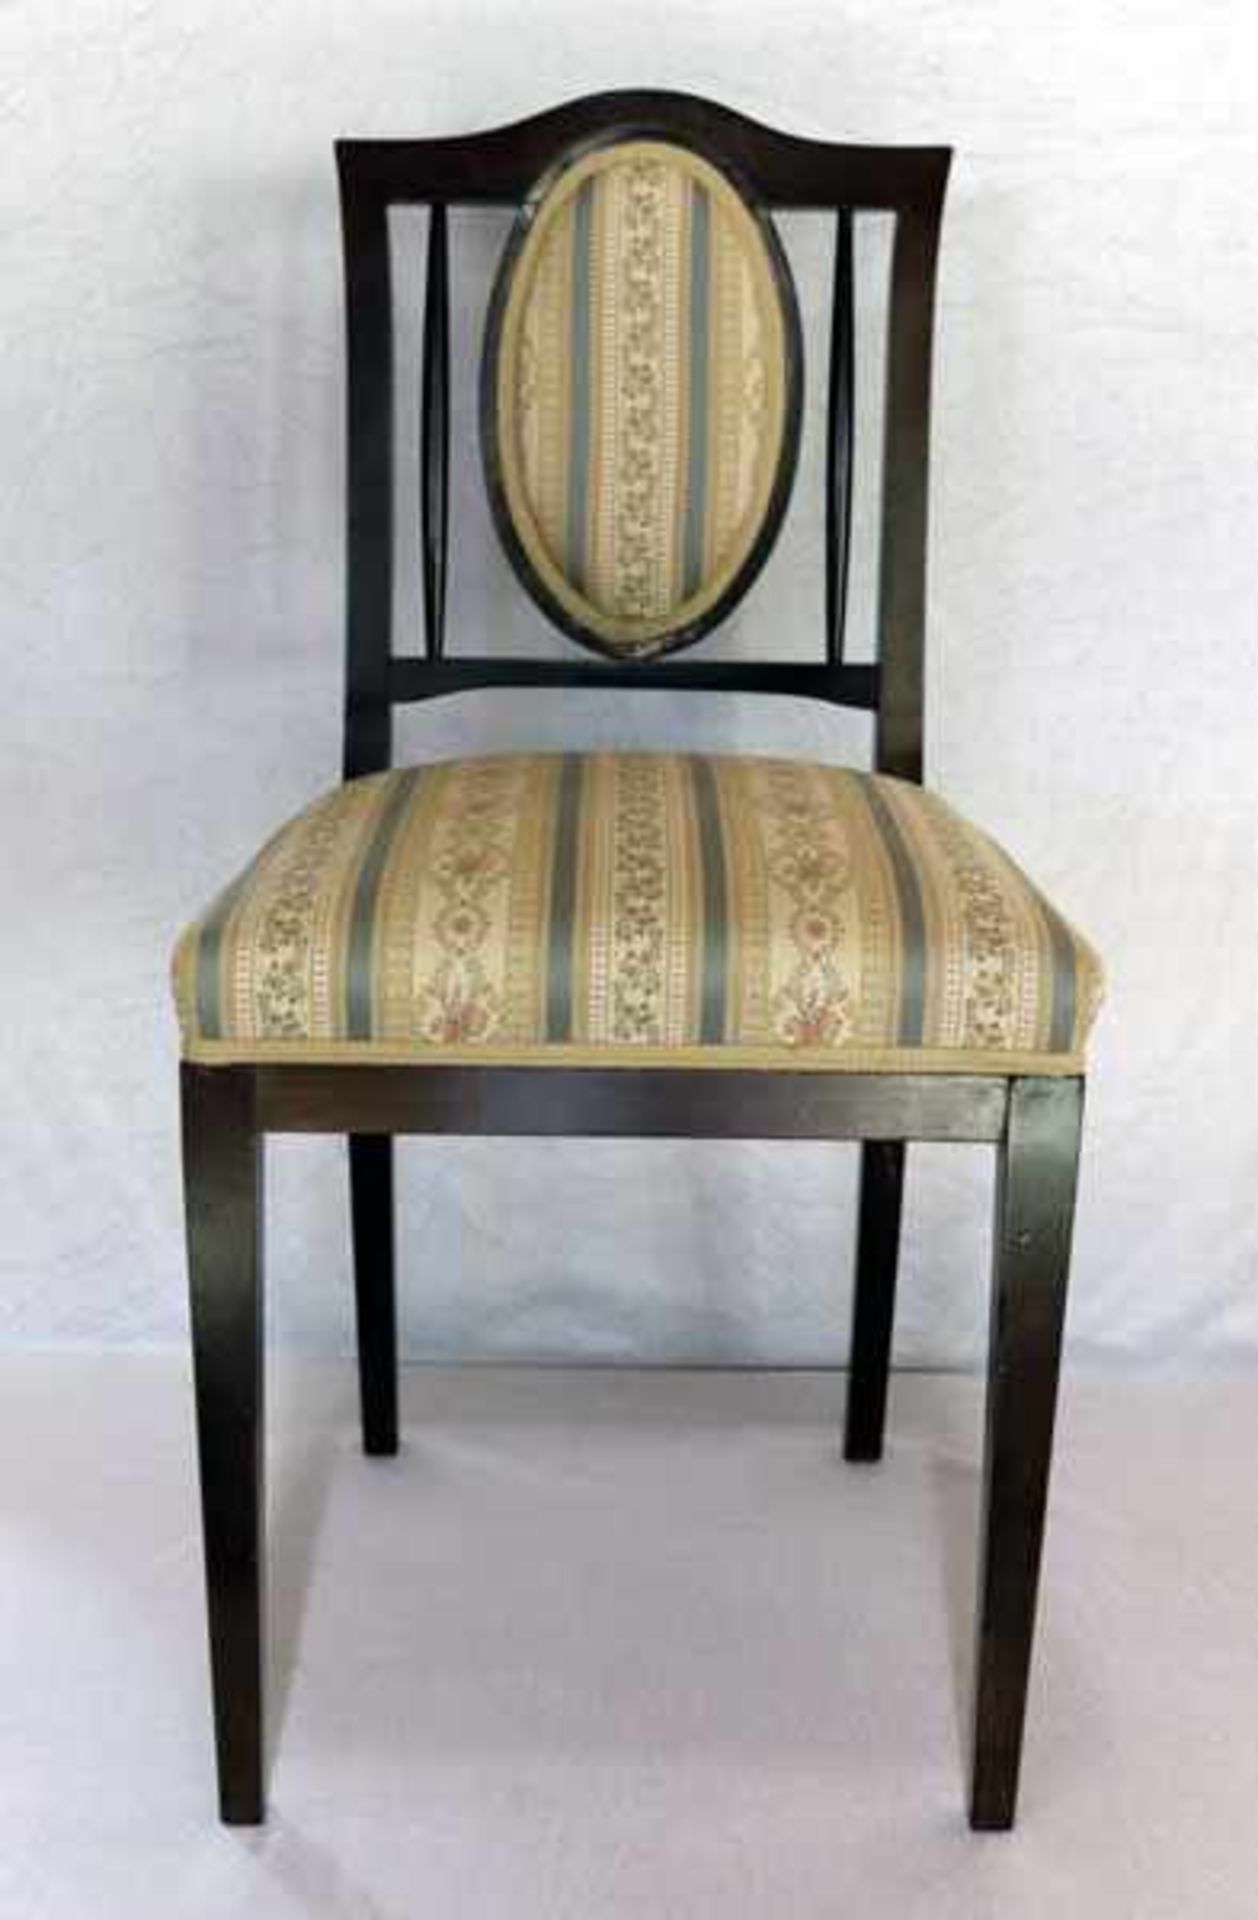 Holzstuhl, Sitz und Lehne gepolstert und beige/blau/floral bezogen, H 88 cm, B 43 cm, T 42 cm,